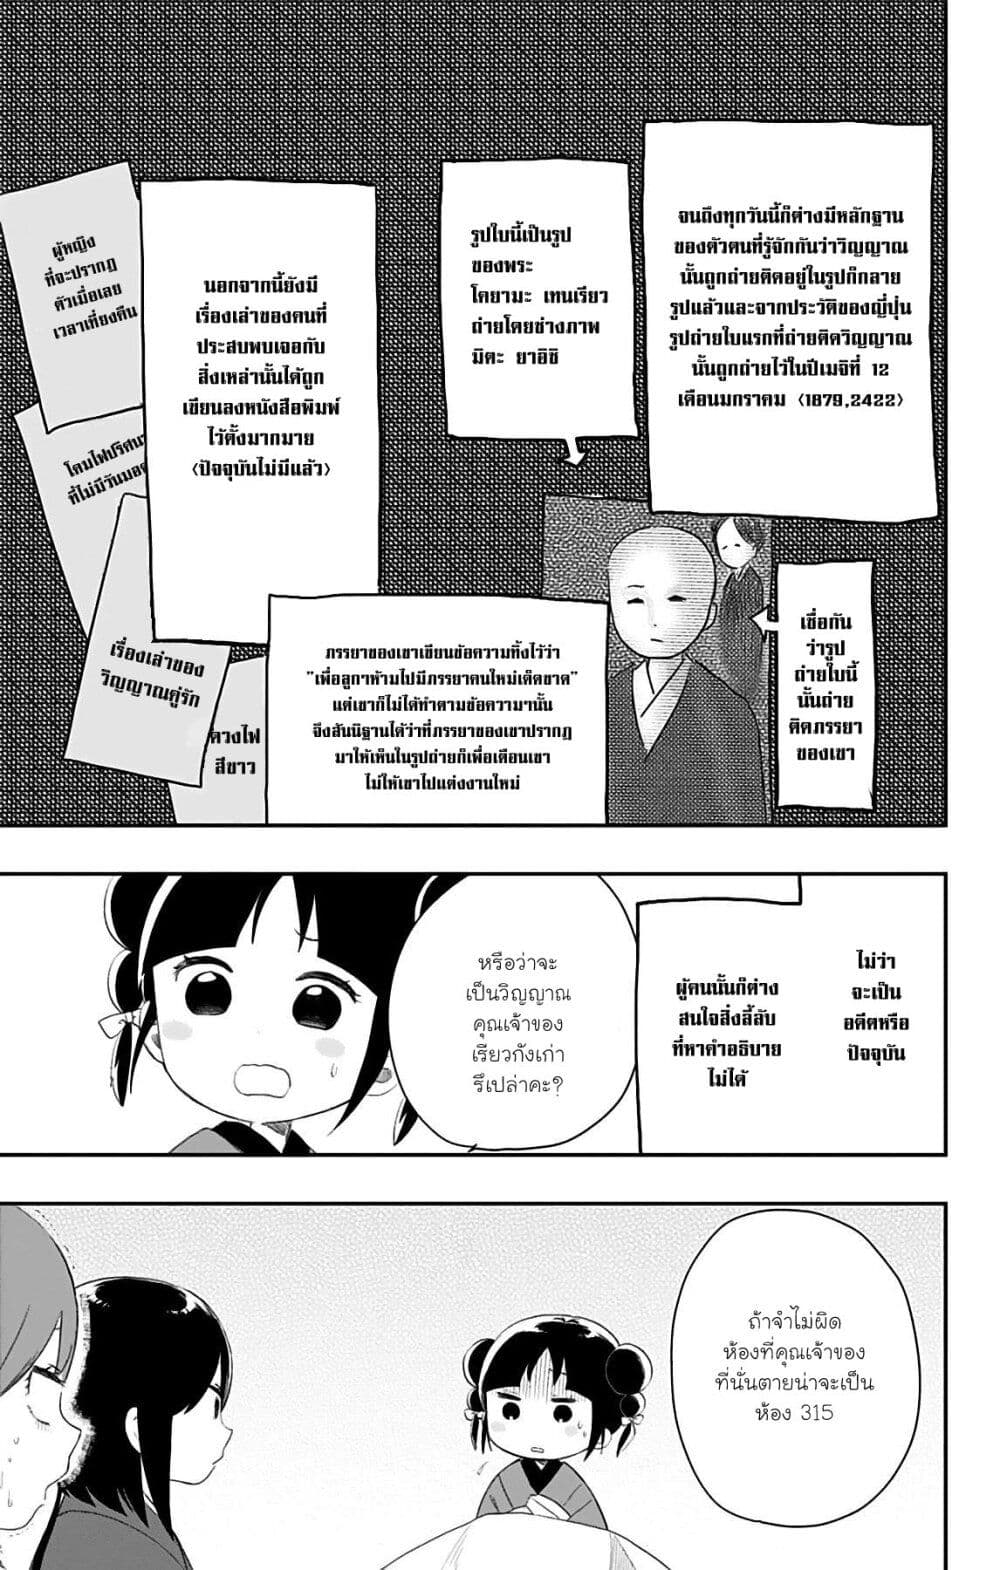 Shouwa Otome Otogibanashi เรื่องเล่าของสาวน้อย ยุคโชวะ ตอนที่ 26 (9)